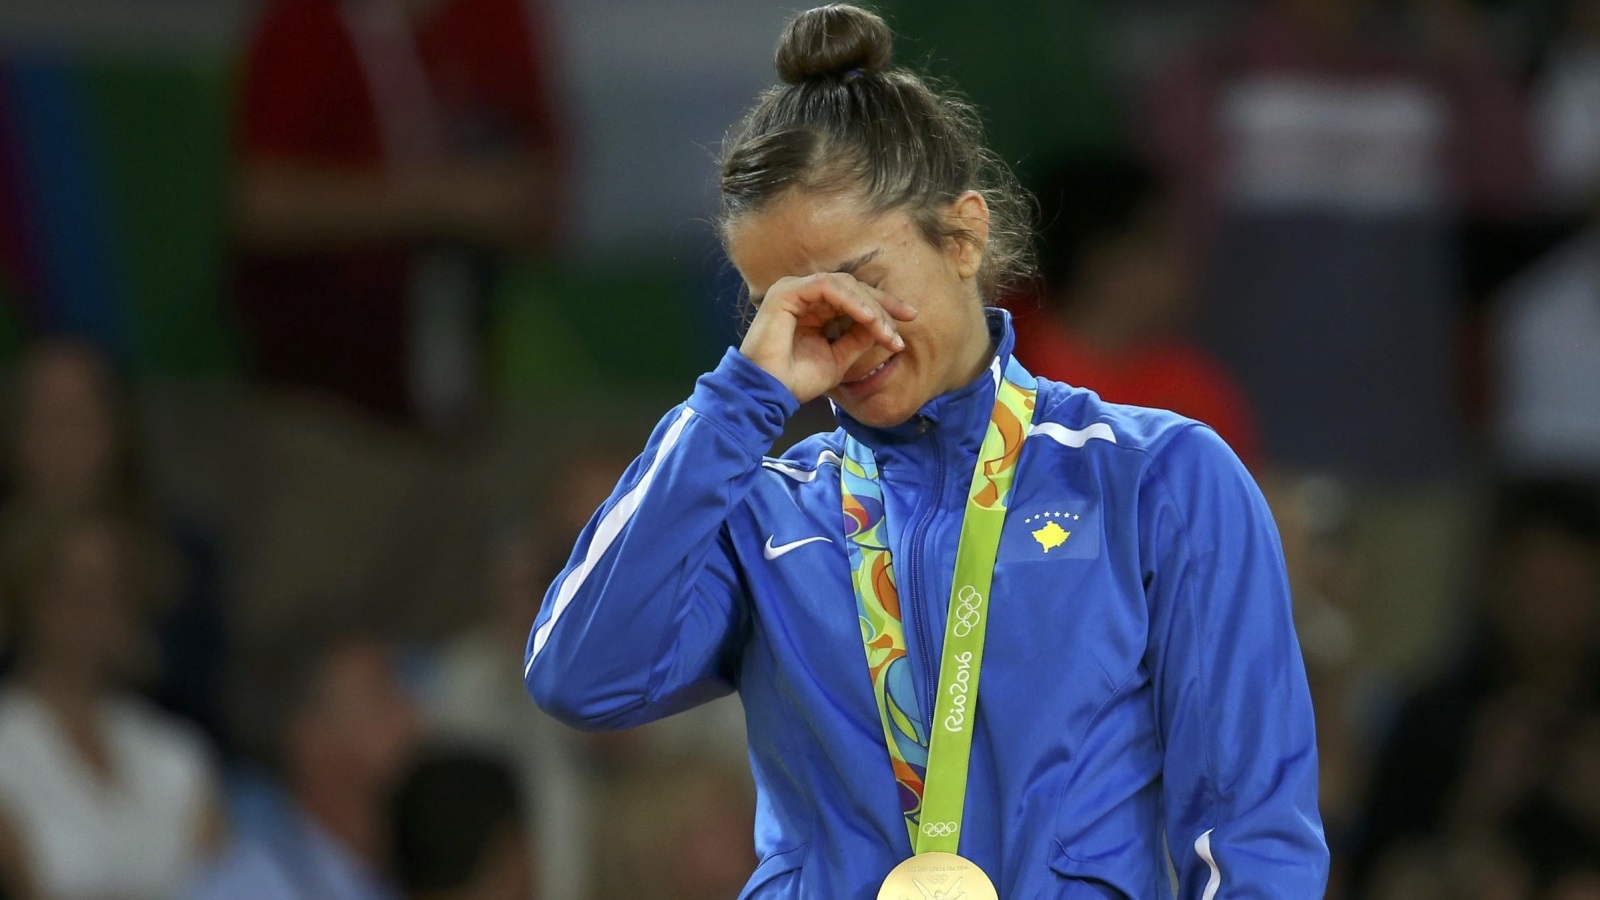  كلمندي لم تحاول إخفاء دموعها عند تتويجها بأول ميدالية أولمبية لبلادها (رويترز)